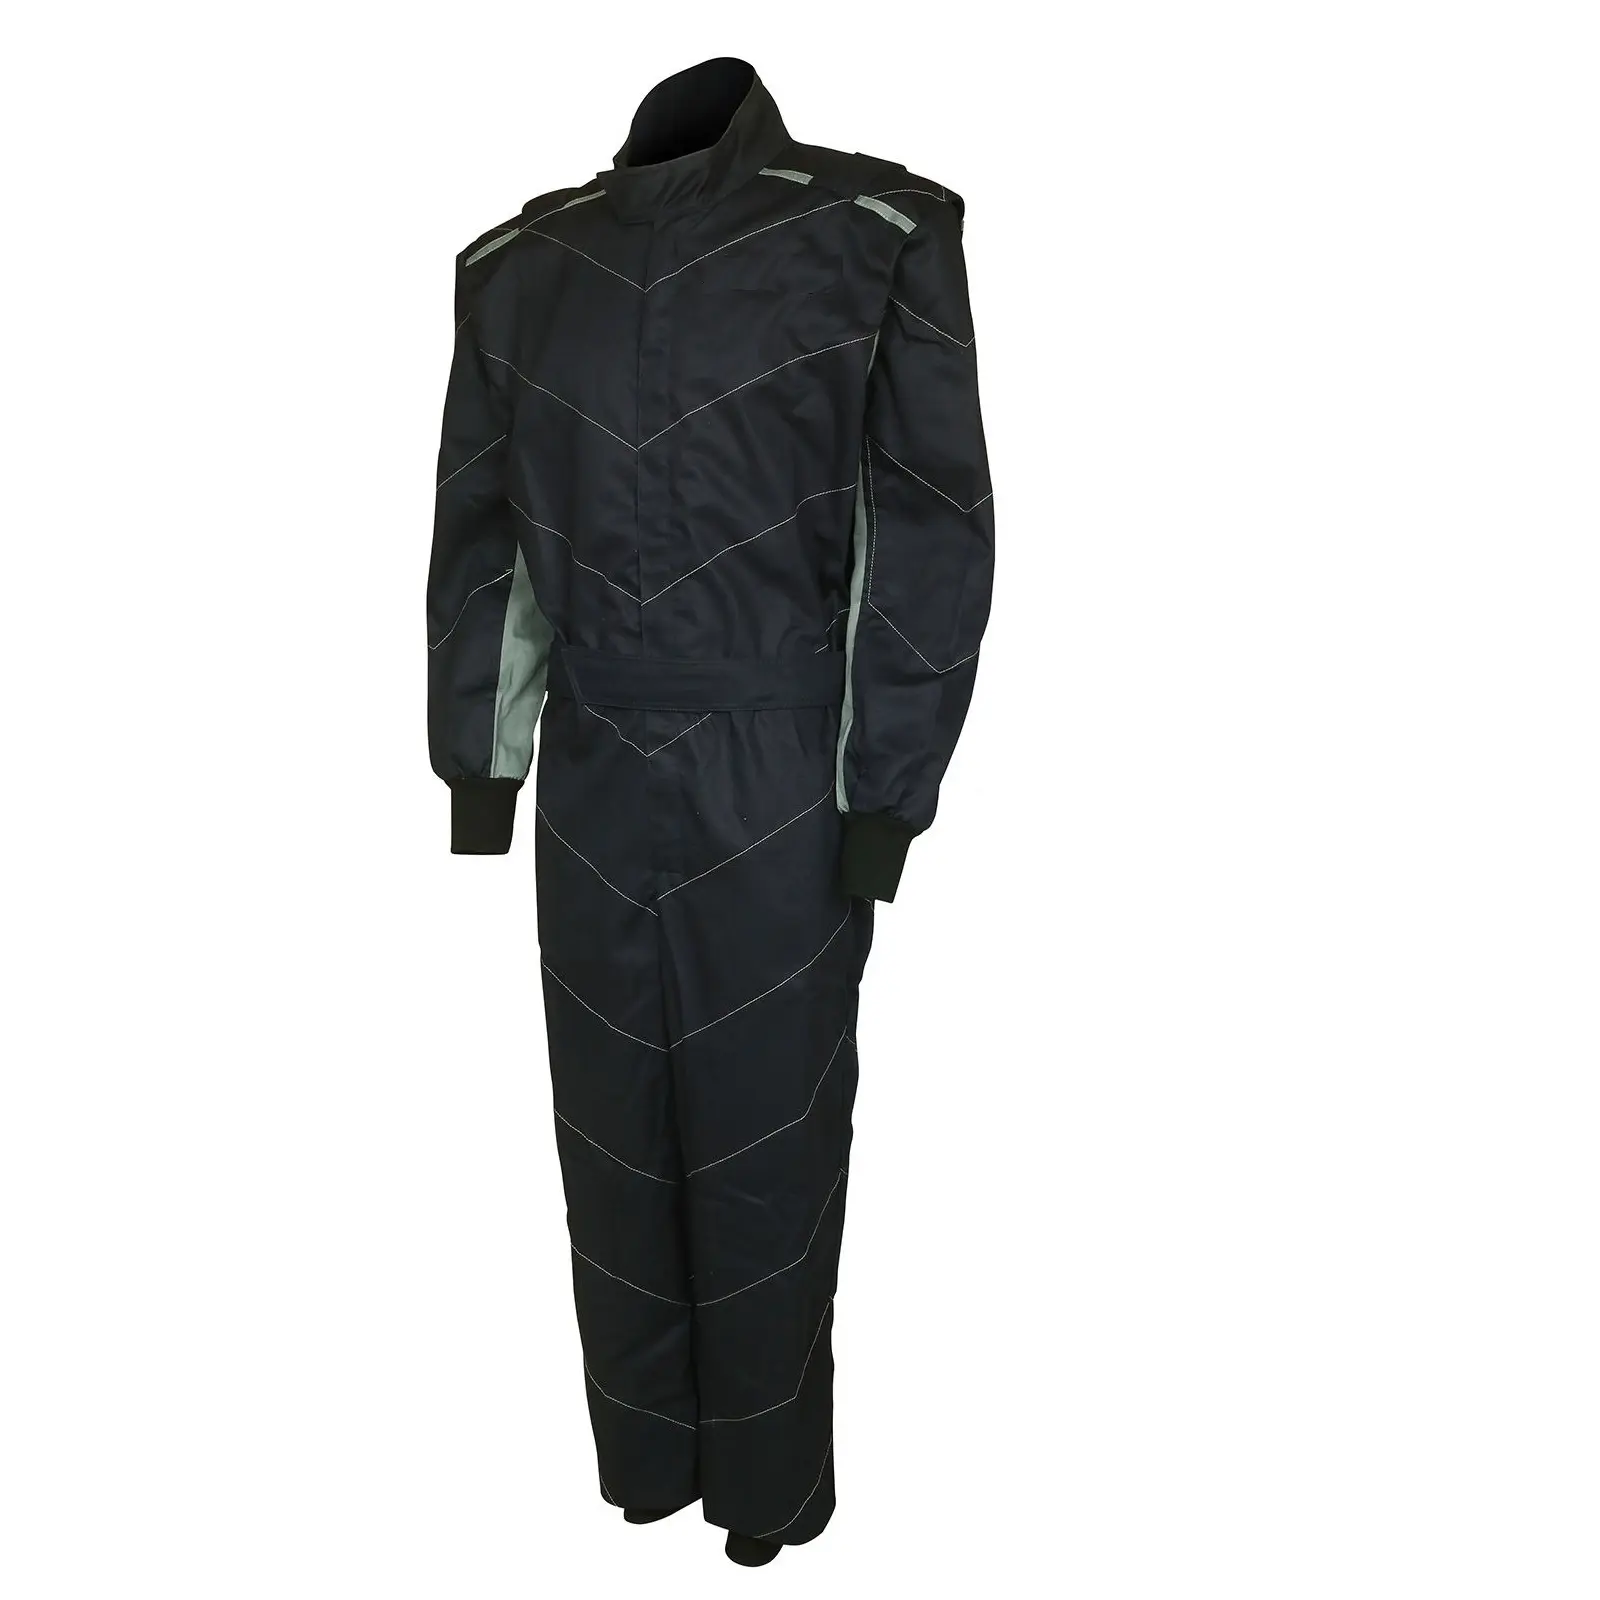 Yüksek kaliteli SFI araba kart sürücüleri için yarış kıyafeti tek parça dayanıklı takım elbise spor oto yarış kıyafeti